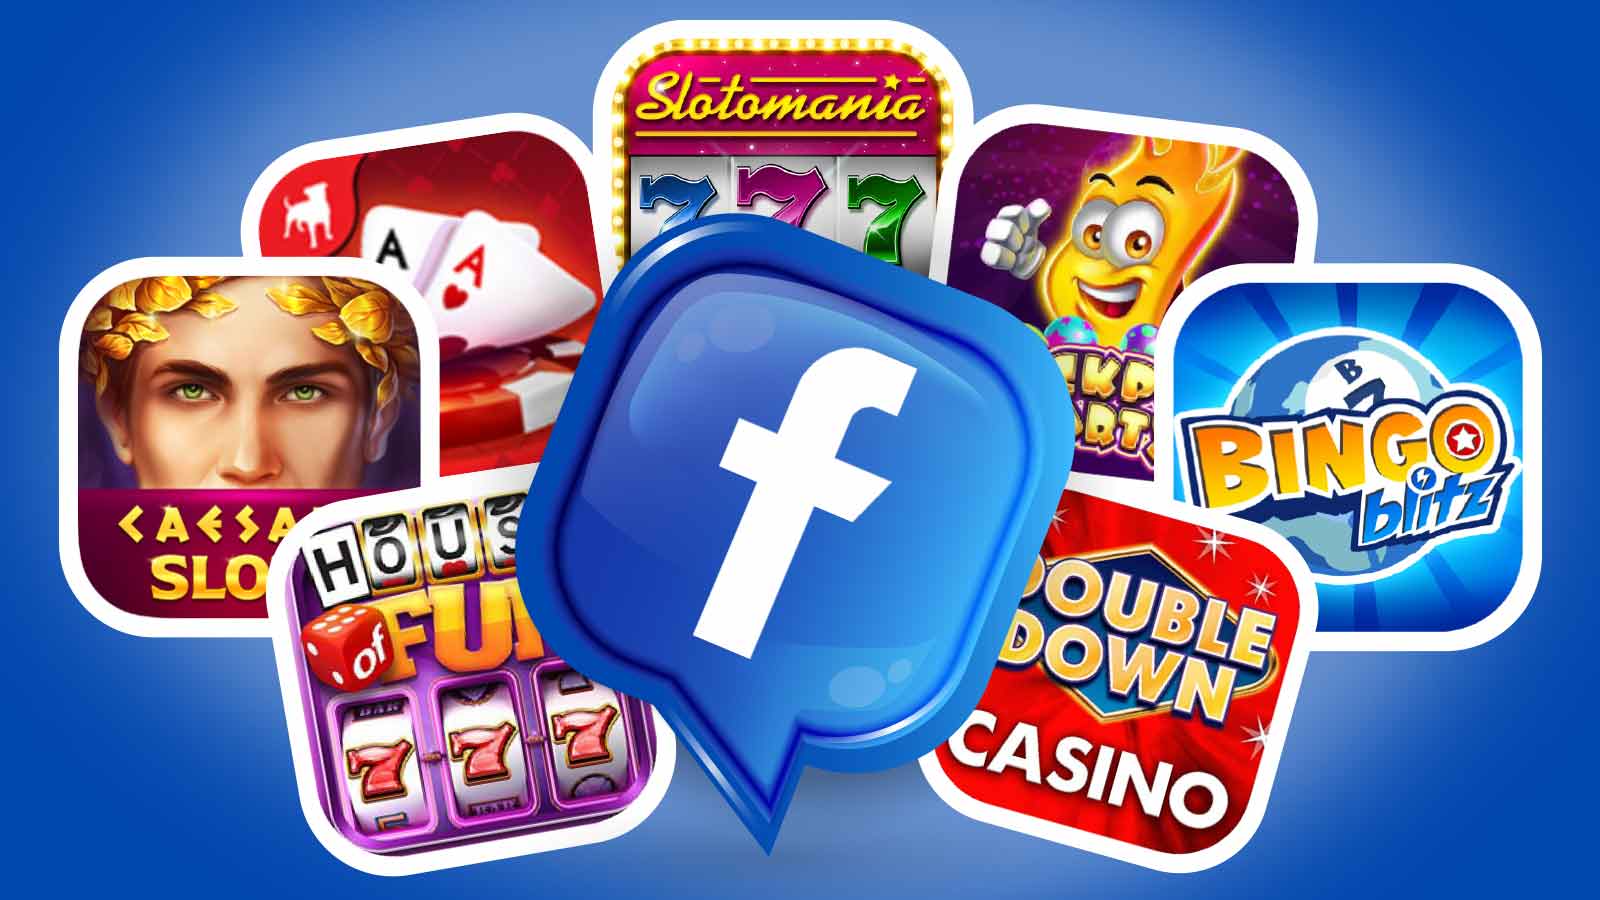 Jocuri de noroc pe Facebook